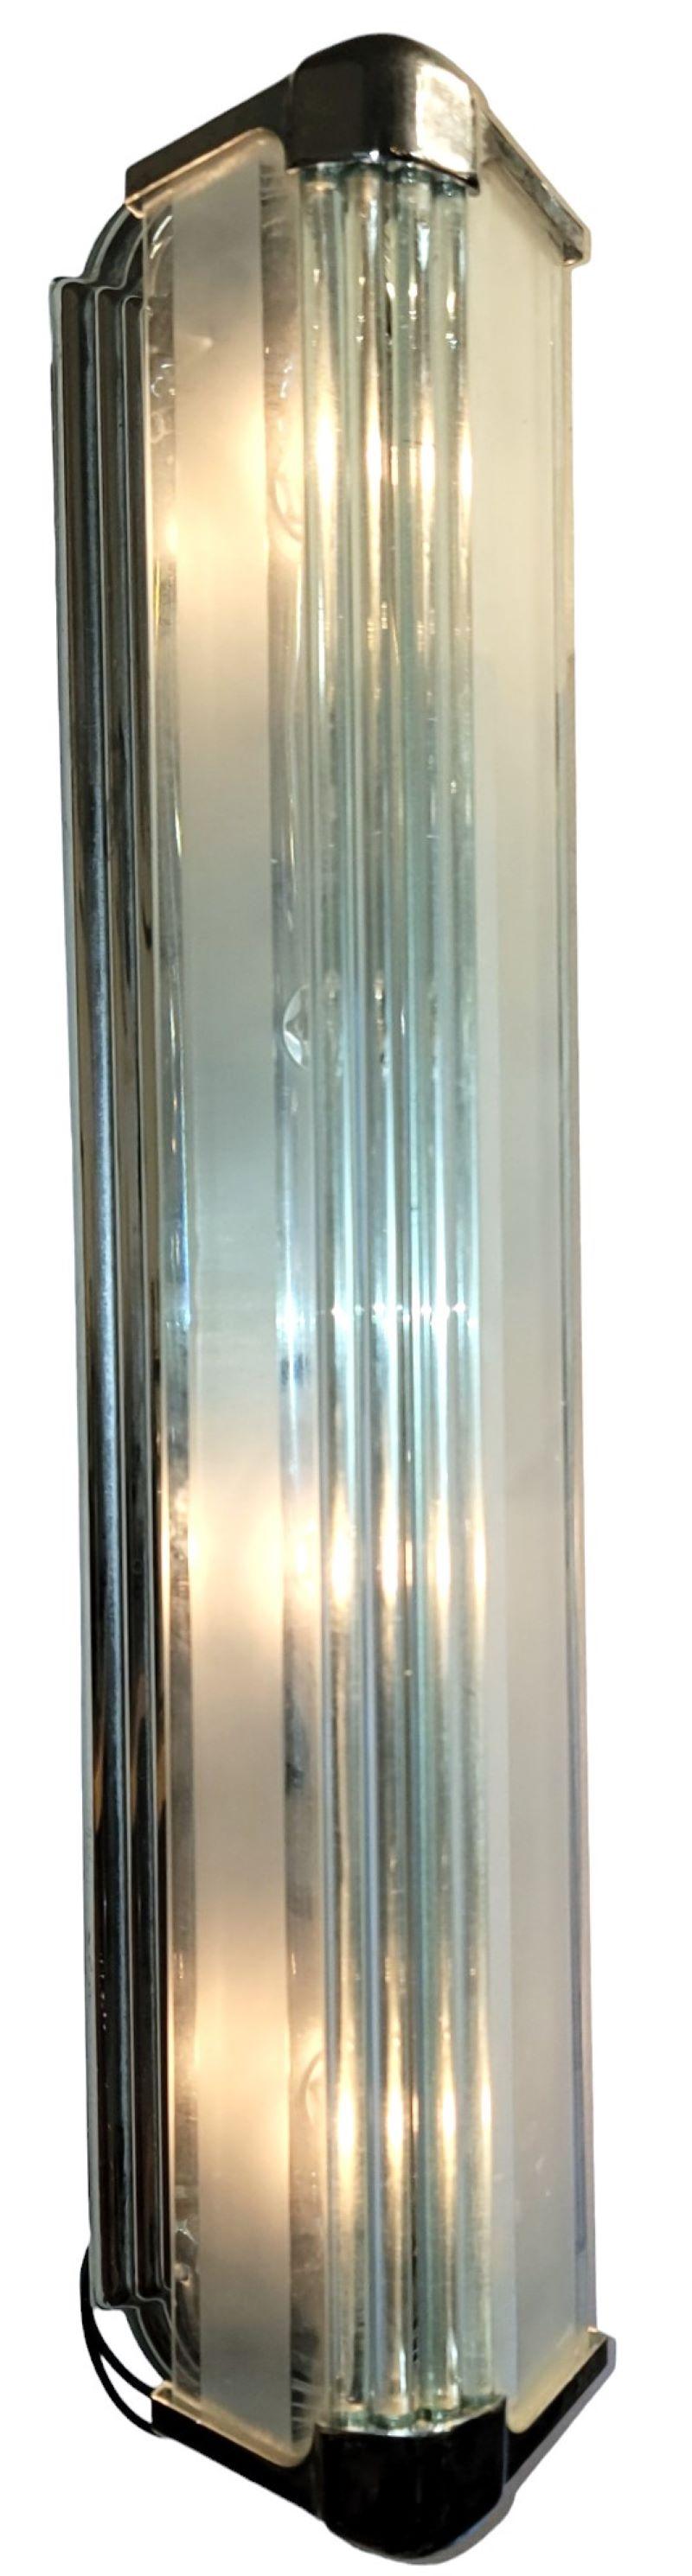 Mid century Pair of Four Light Glass and Chrome Sconces. Großartiges Set von Wandleuchtern, die vertikal oder horizontal verwendet werden können. Der Sockel ermöglicht eine Vielzahl von Winkeln. Jede Leuchte hat vier Lichter und bietet einen großen